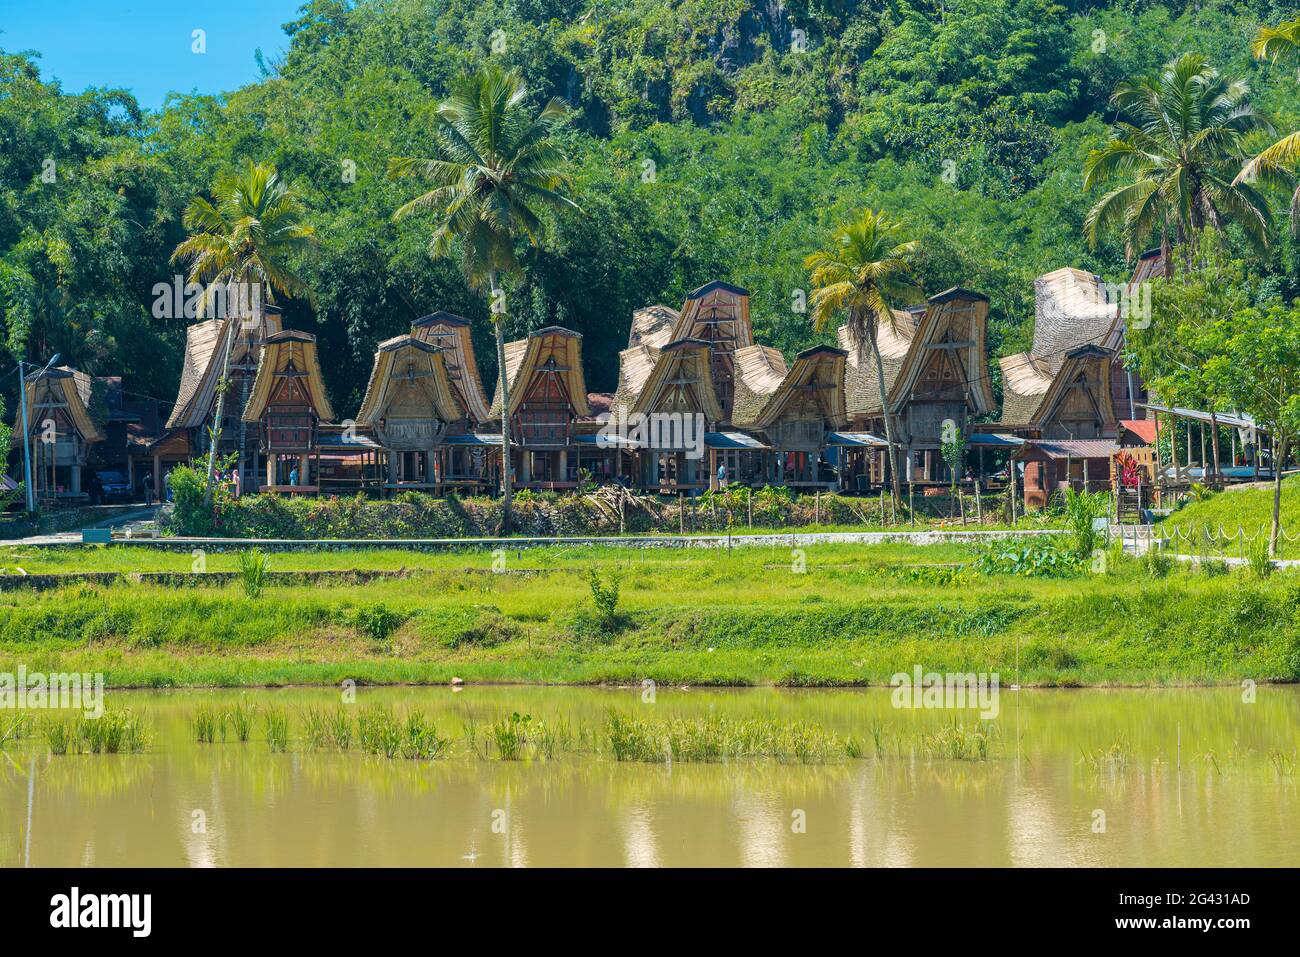 Kete Kesu ist ein Dorf von Tana Toraja, das für seine Bräuche und sein traditionelles Leben bekannt ist Stockfoto